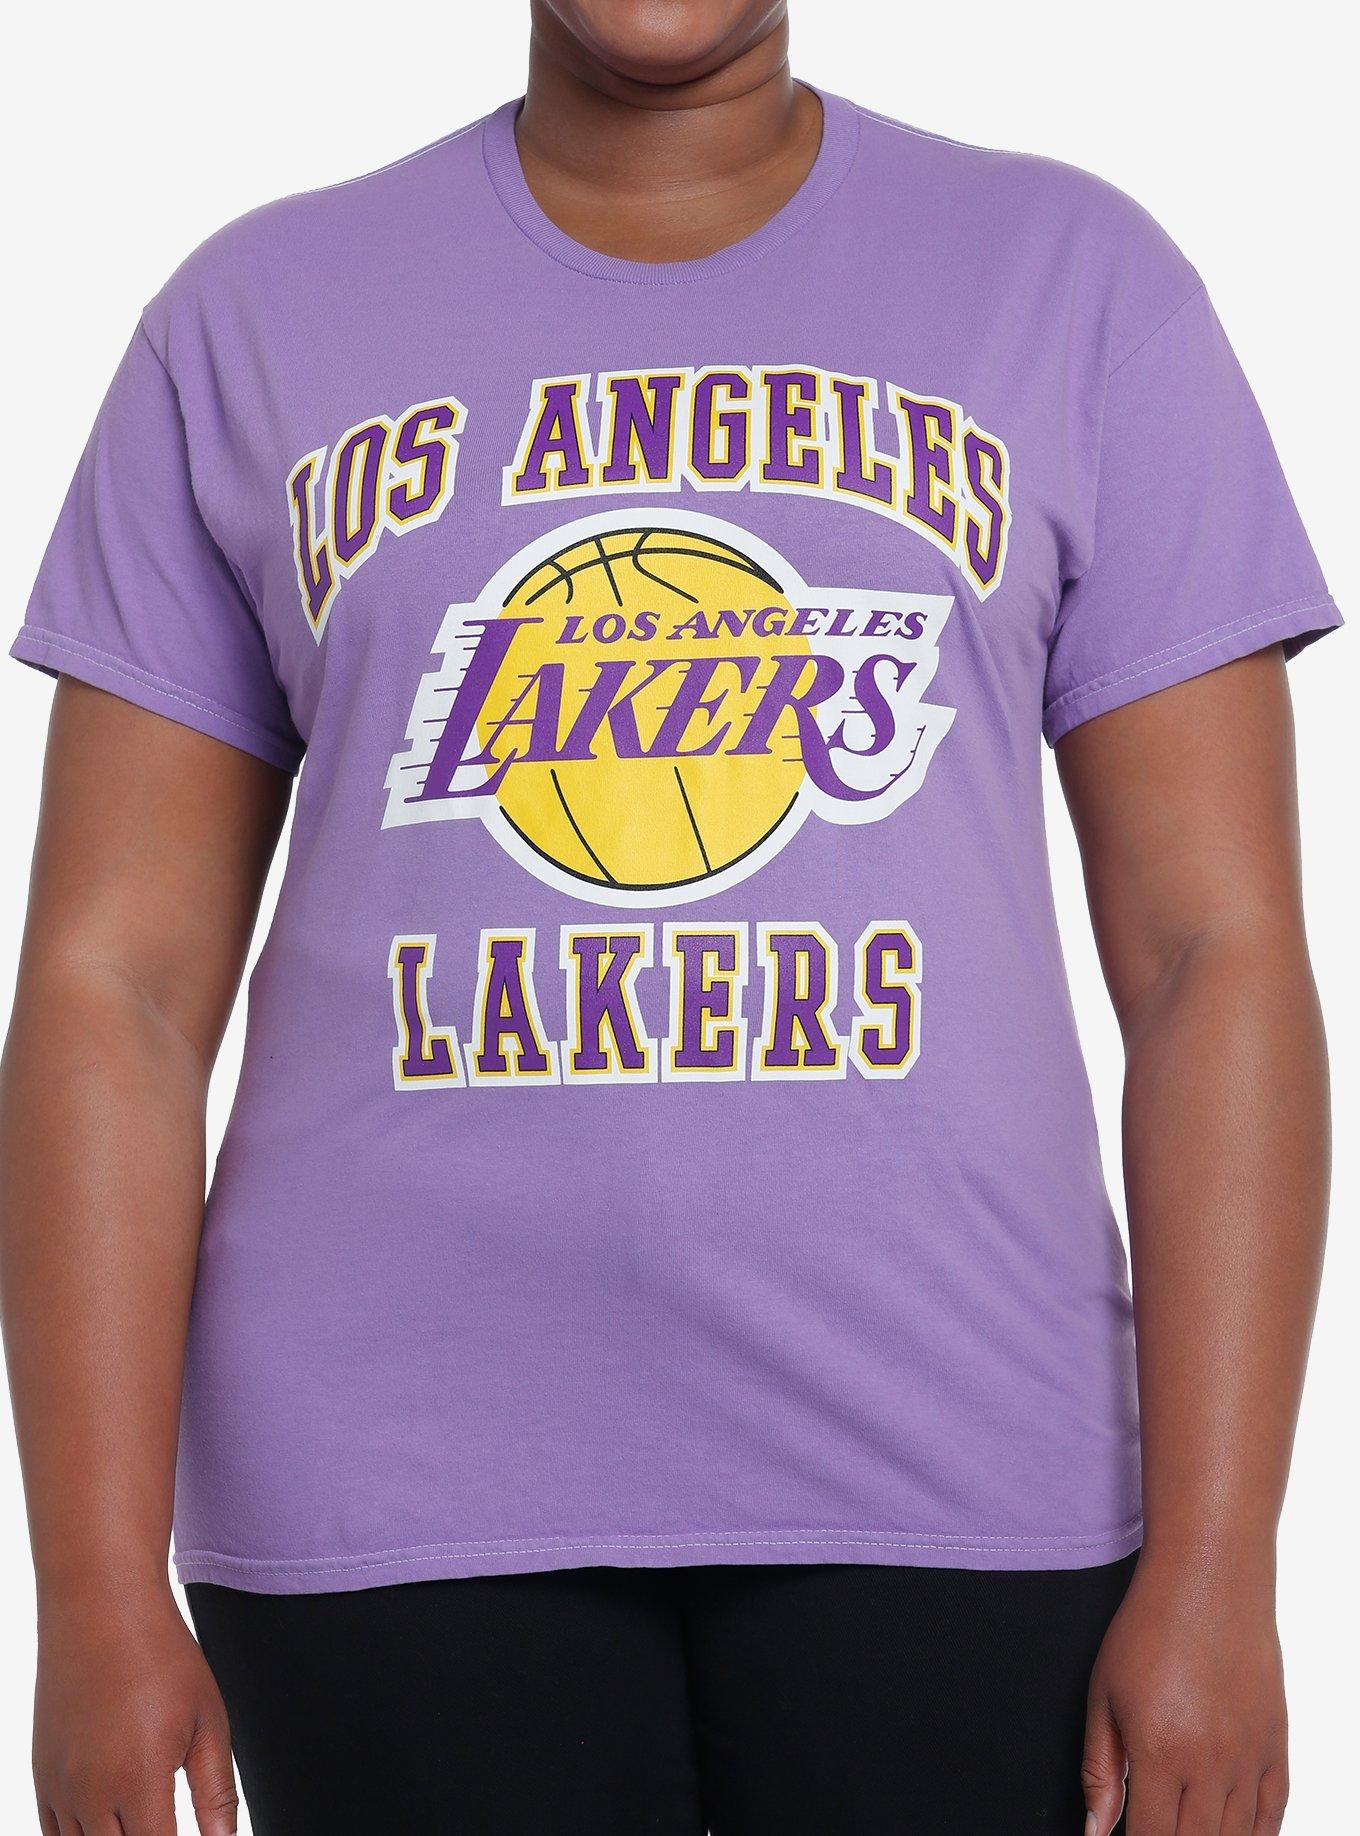 Her Universe NBA Los Angeles Lakers Tie-Dye Hoodie Plus Size